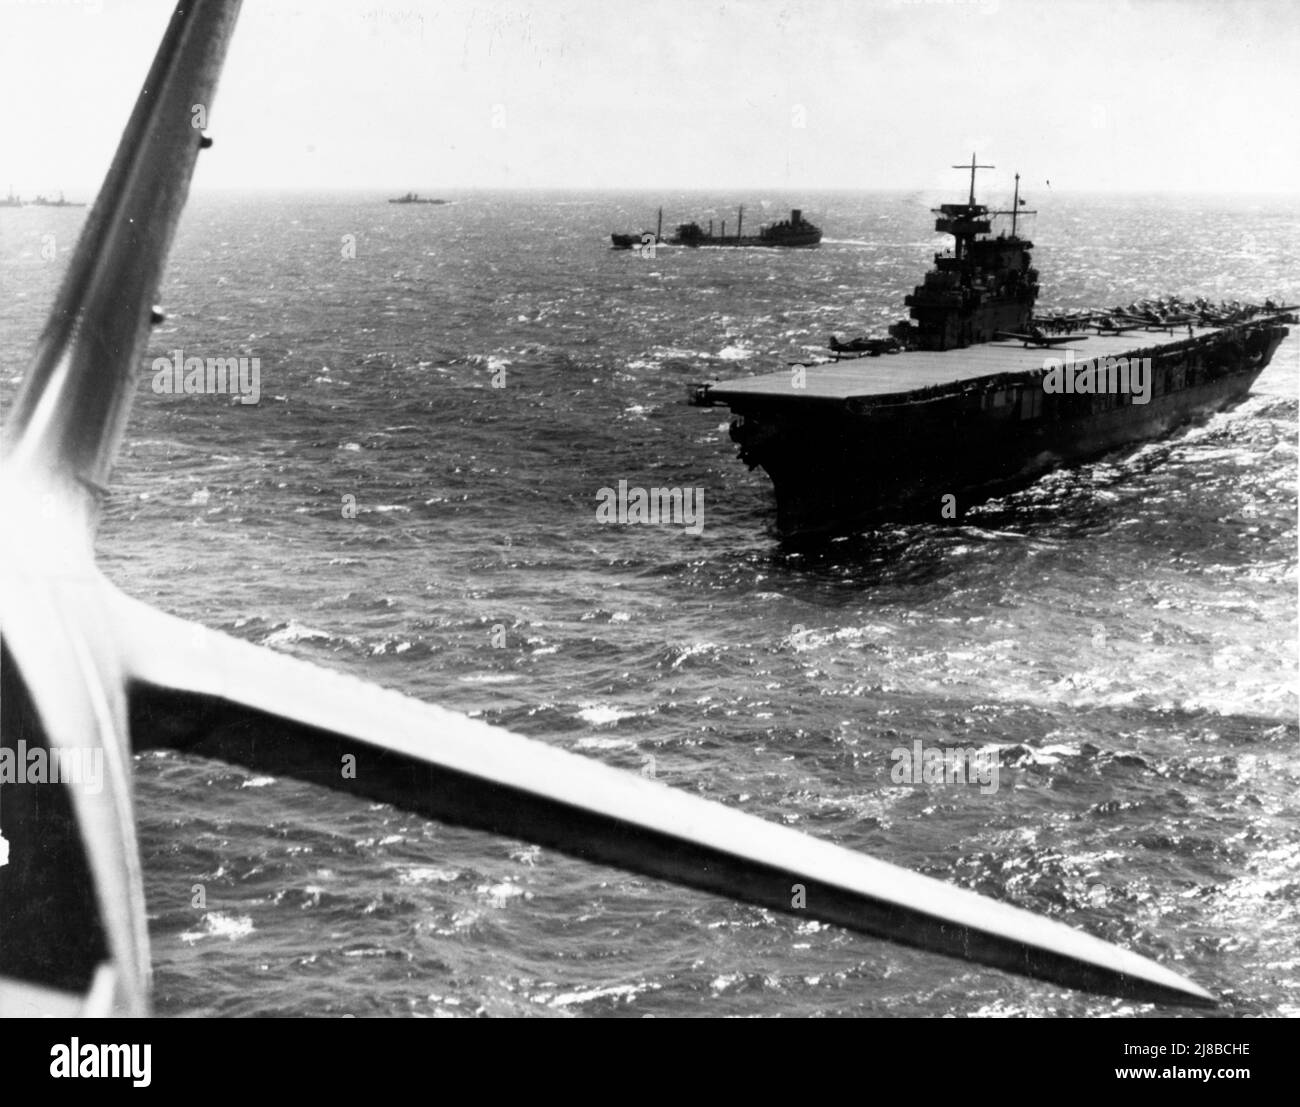 Der Flugzeugträger USS Yorktown aus der Sicht eines Flugzeugs, das gerade von ihm abgeheben ist Stockfoto